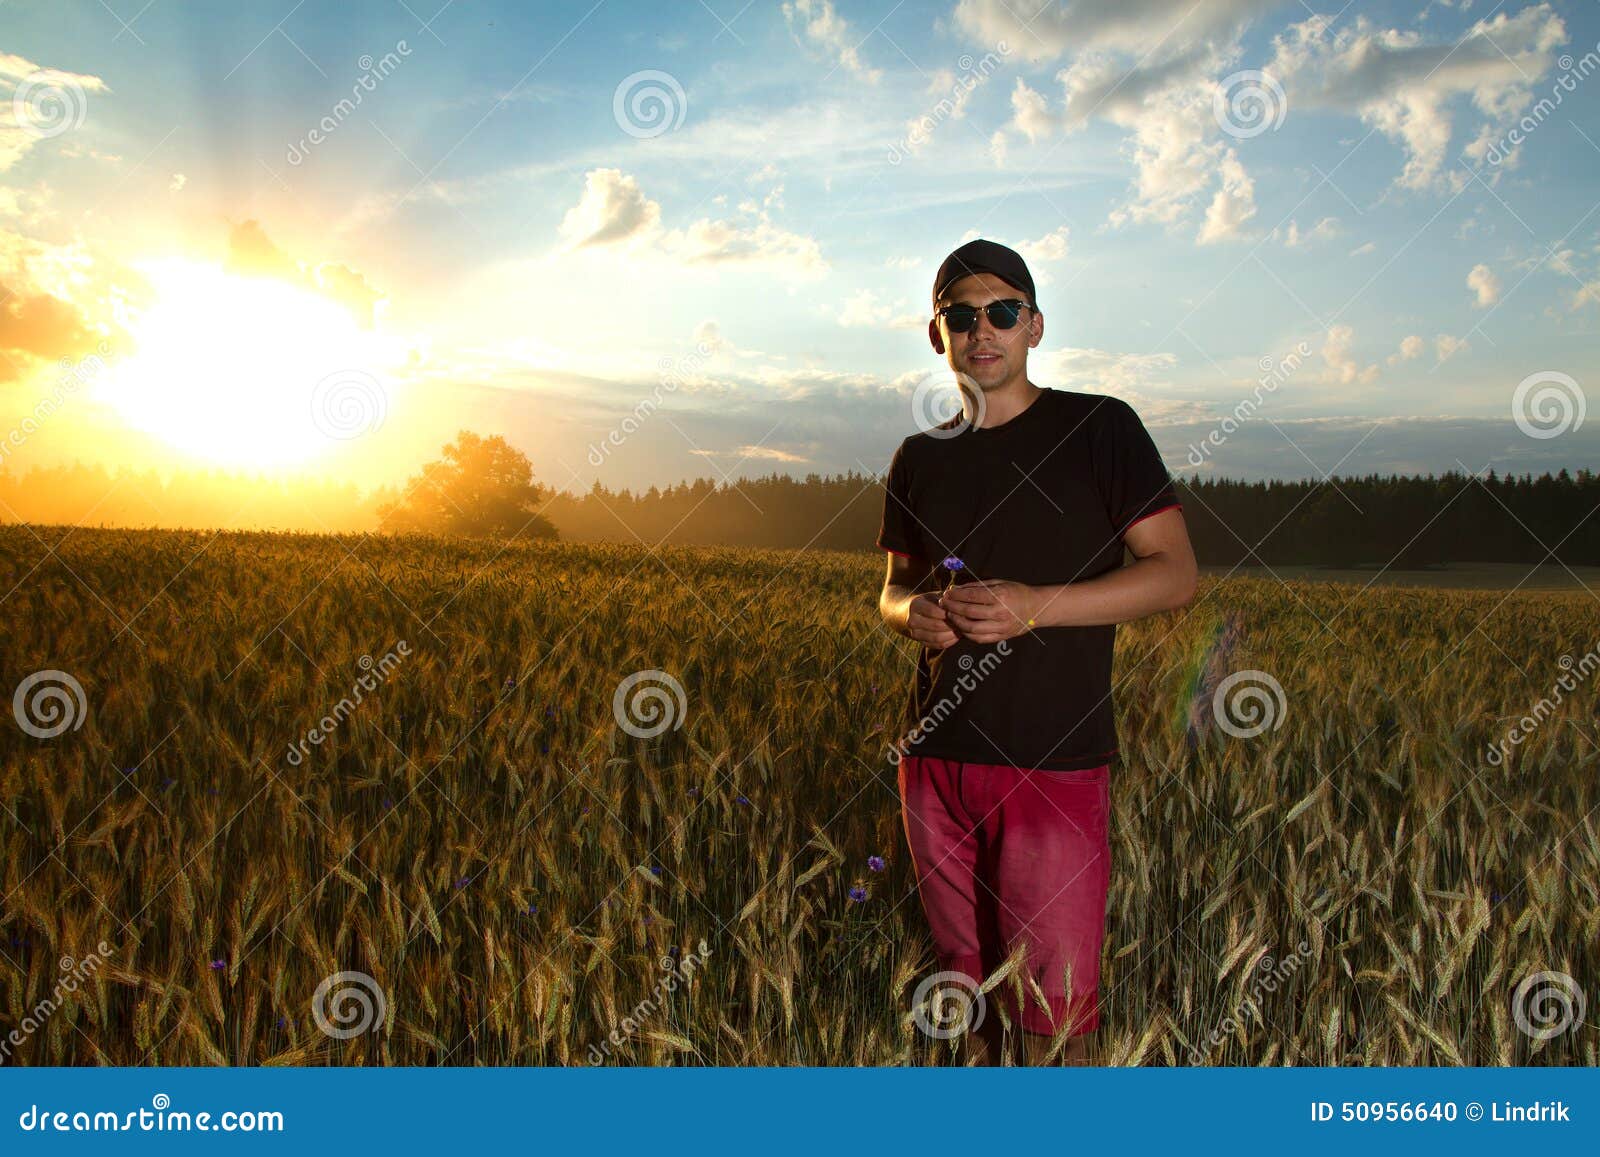 Lifestyle un hombre en un campo en la puesta del sol que disfruta de vida, del buen tiempo, del aire fresco y del silencio